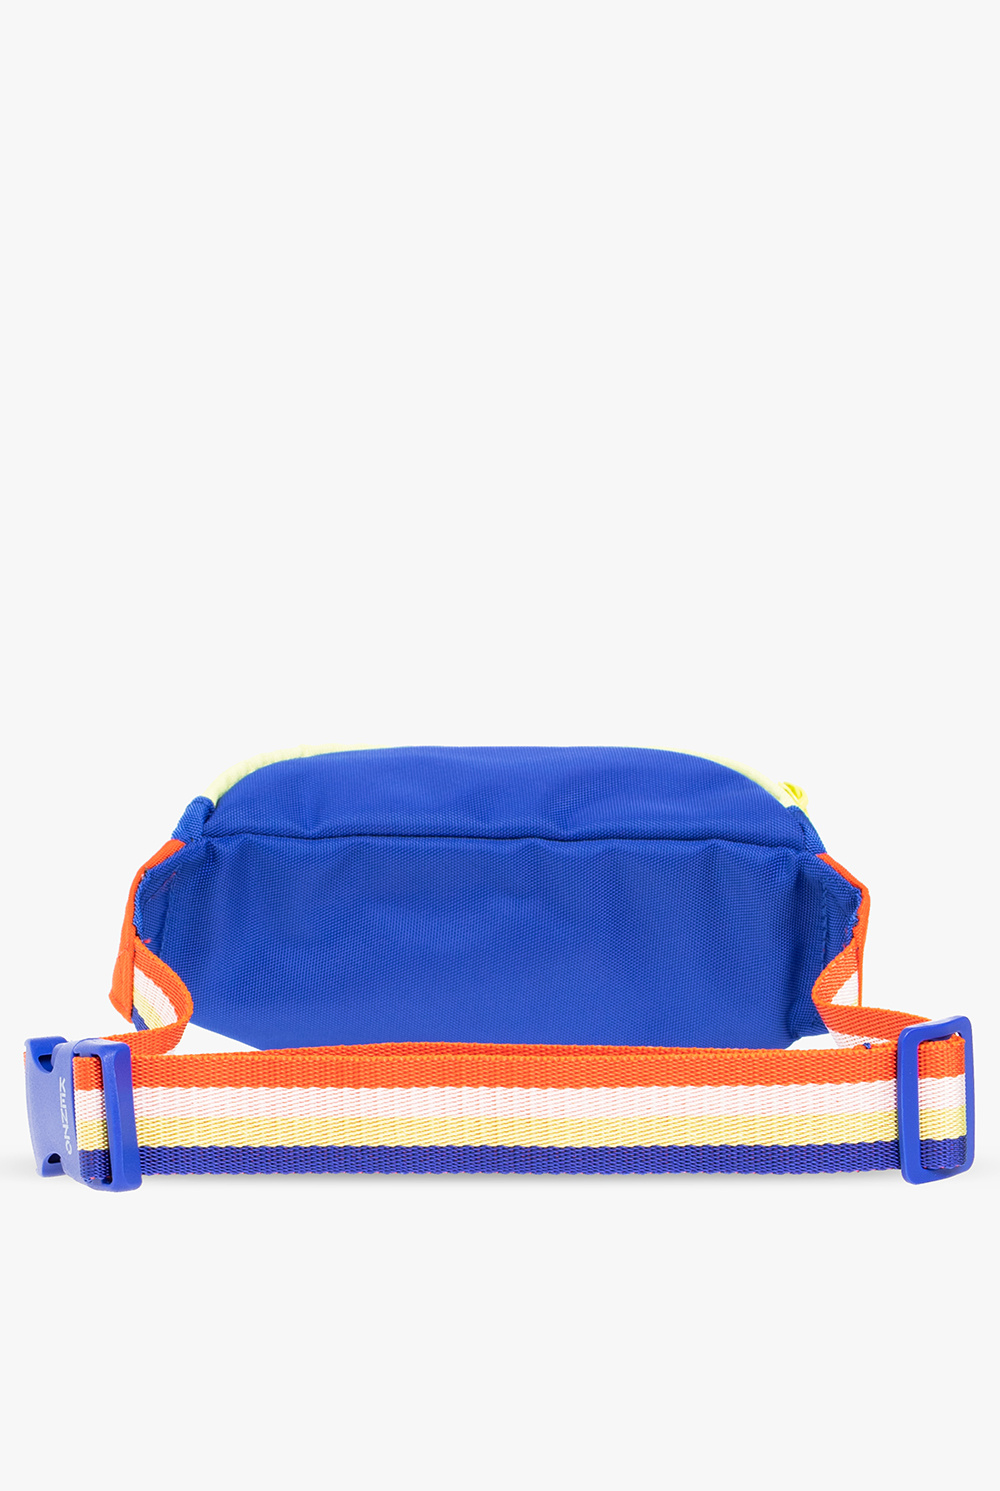 Kenzo Kids Herschel Nova Mini Backpack